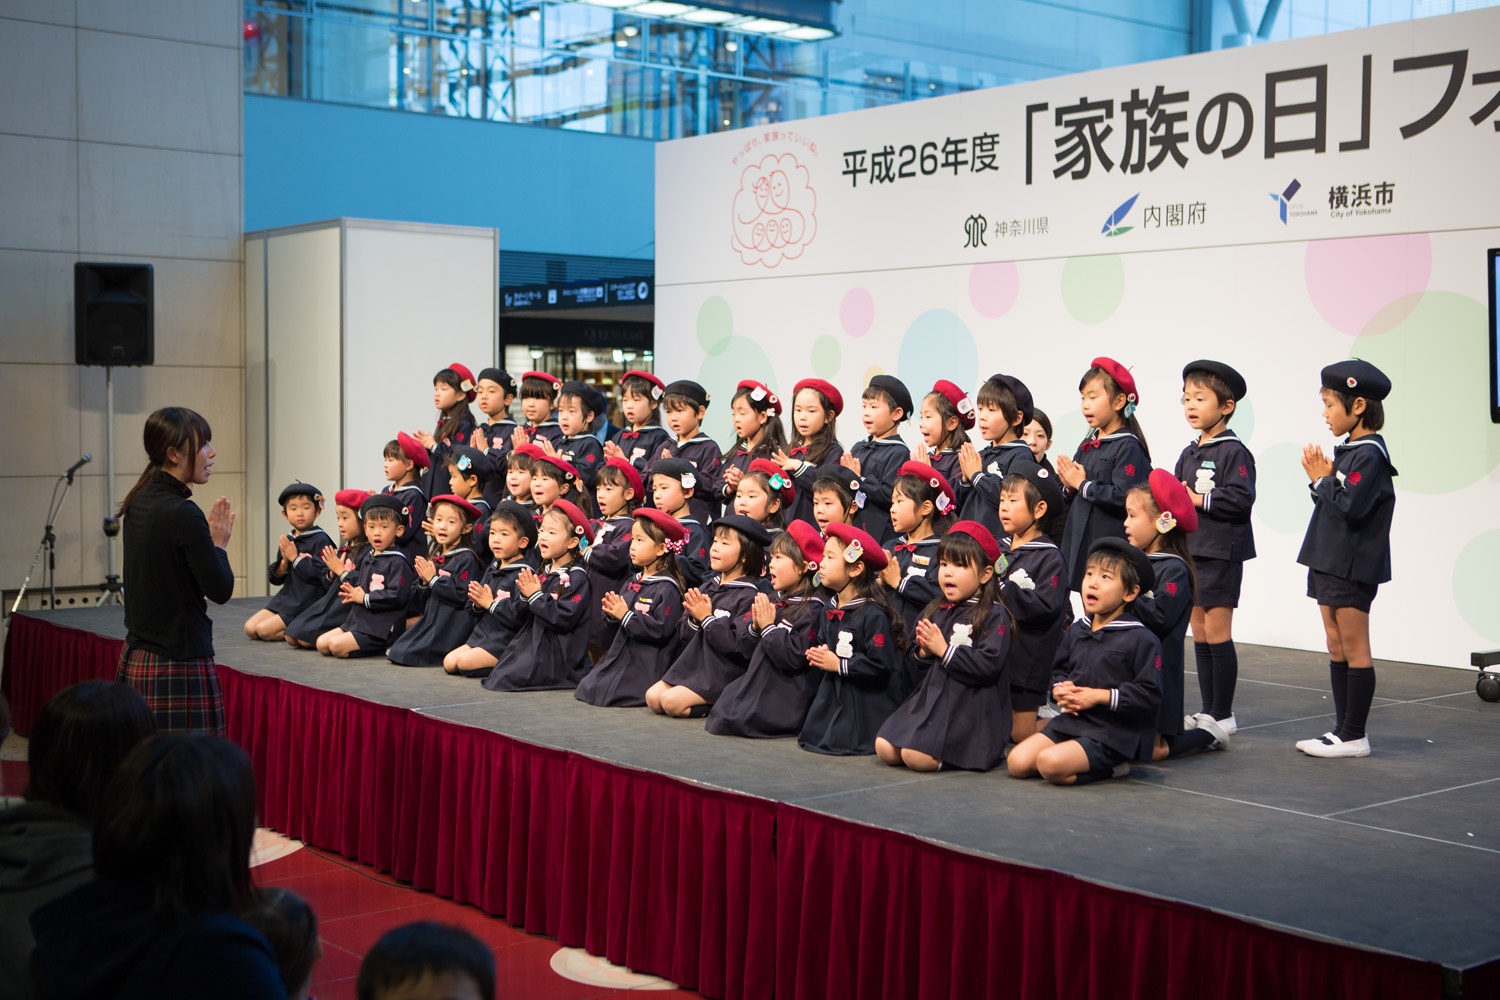 フォーラムのオープニングでは、願成寺附属ばらの幼稚園の園児が合唱を披露